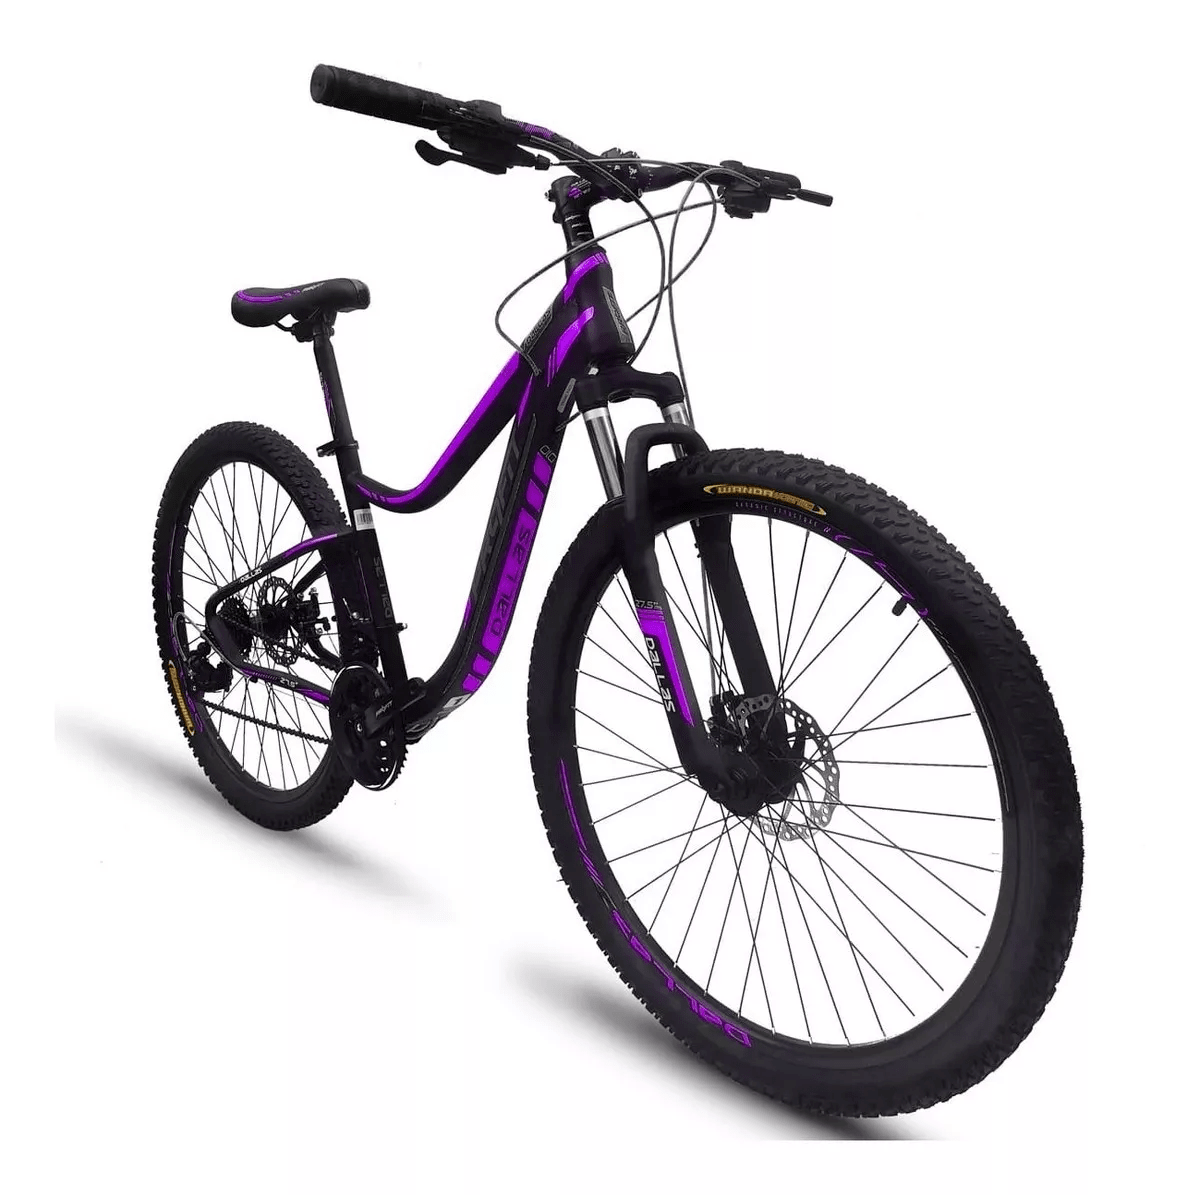 Bicicletas Timberlinh - Bicicleta para dama Profit Montana